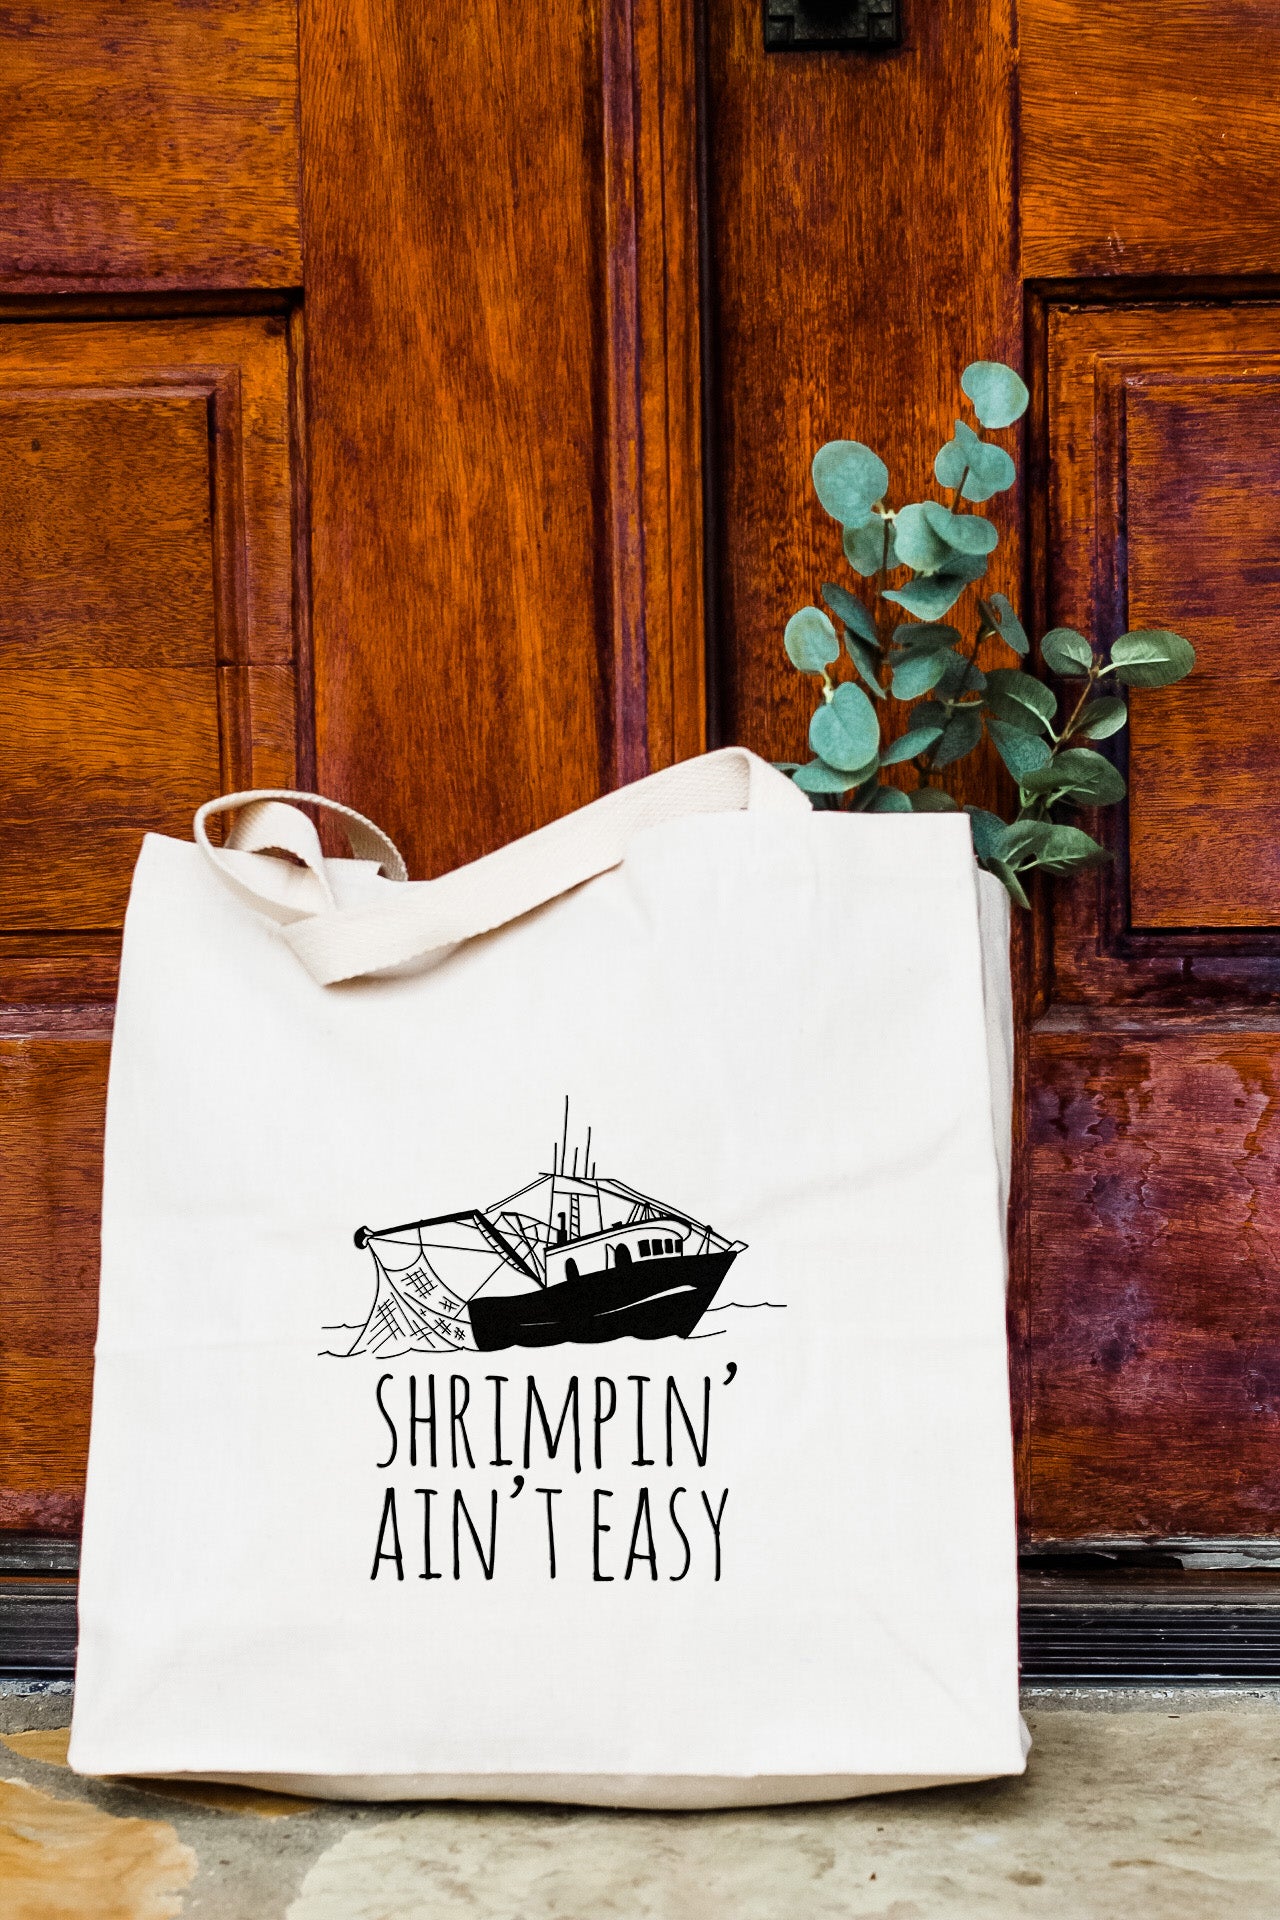 Shrimpin' Ain't Easy - Tote Bag - MoonlightMakers